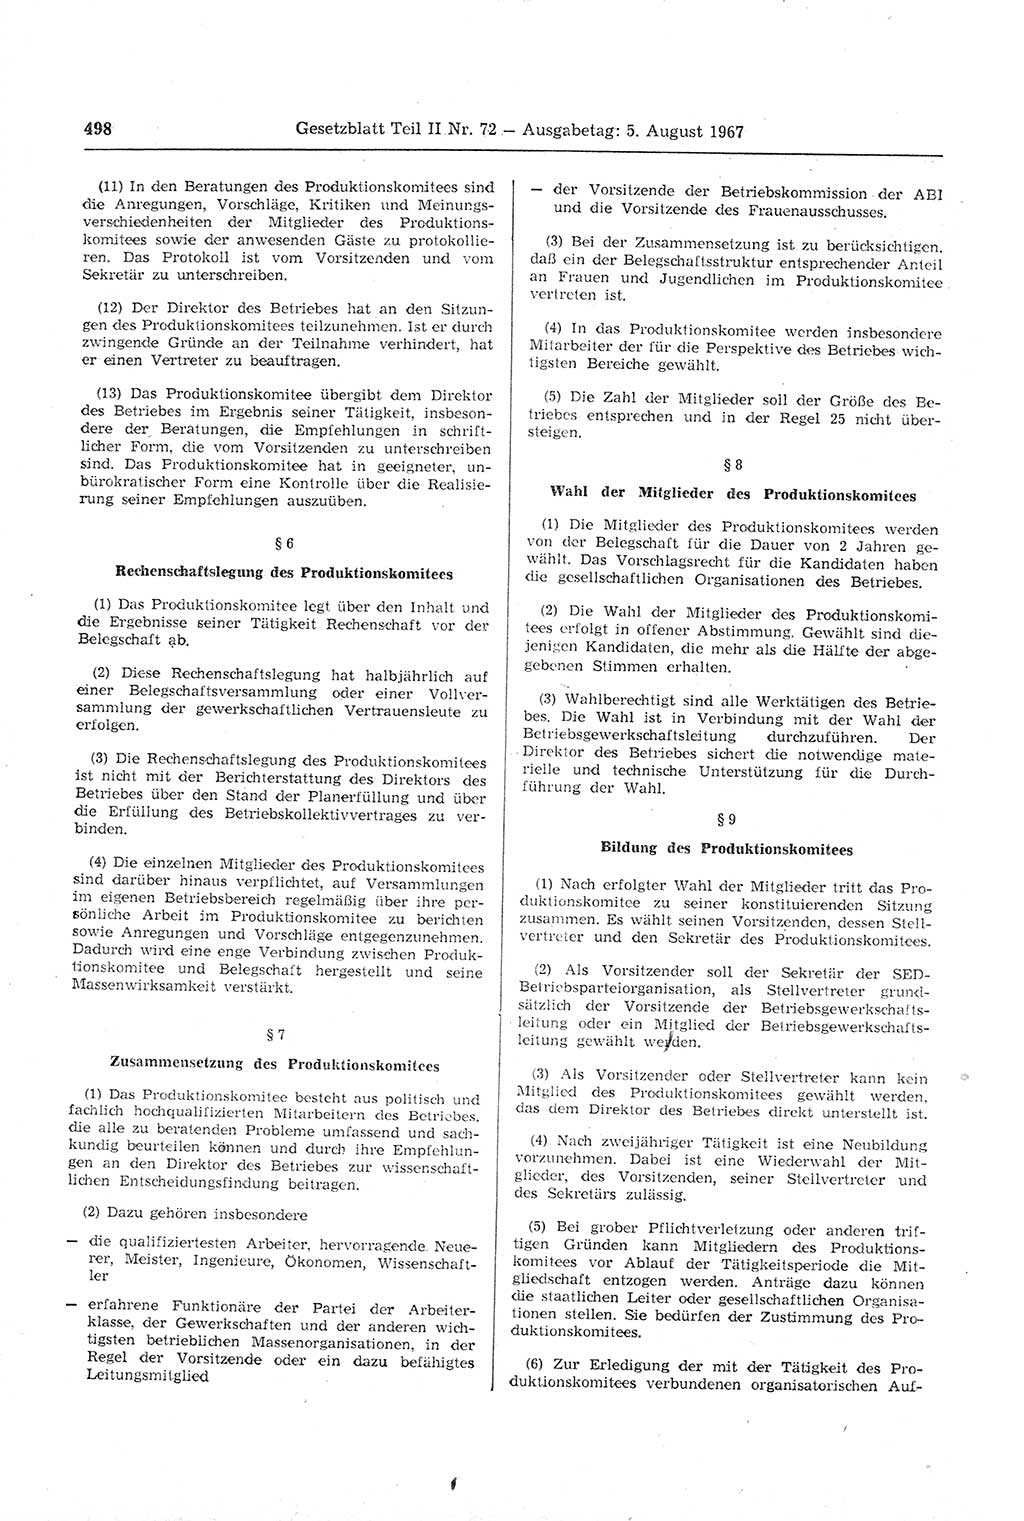 Gesetzblatt (GBl.) der Deutschen Demokratischen Republik (DDR) Teil ⅠⅠ 1967, Seite 498 (GBl. DDR ⅠⅠ 1967, S. 498)